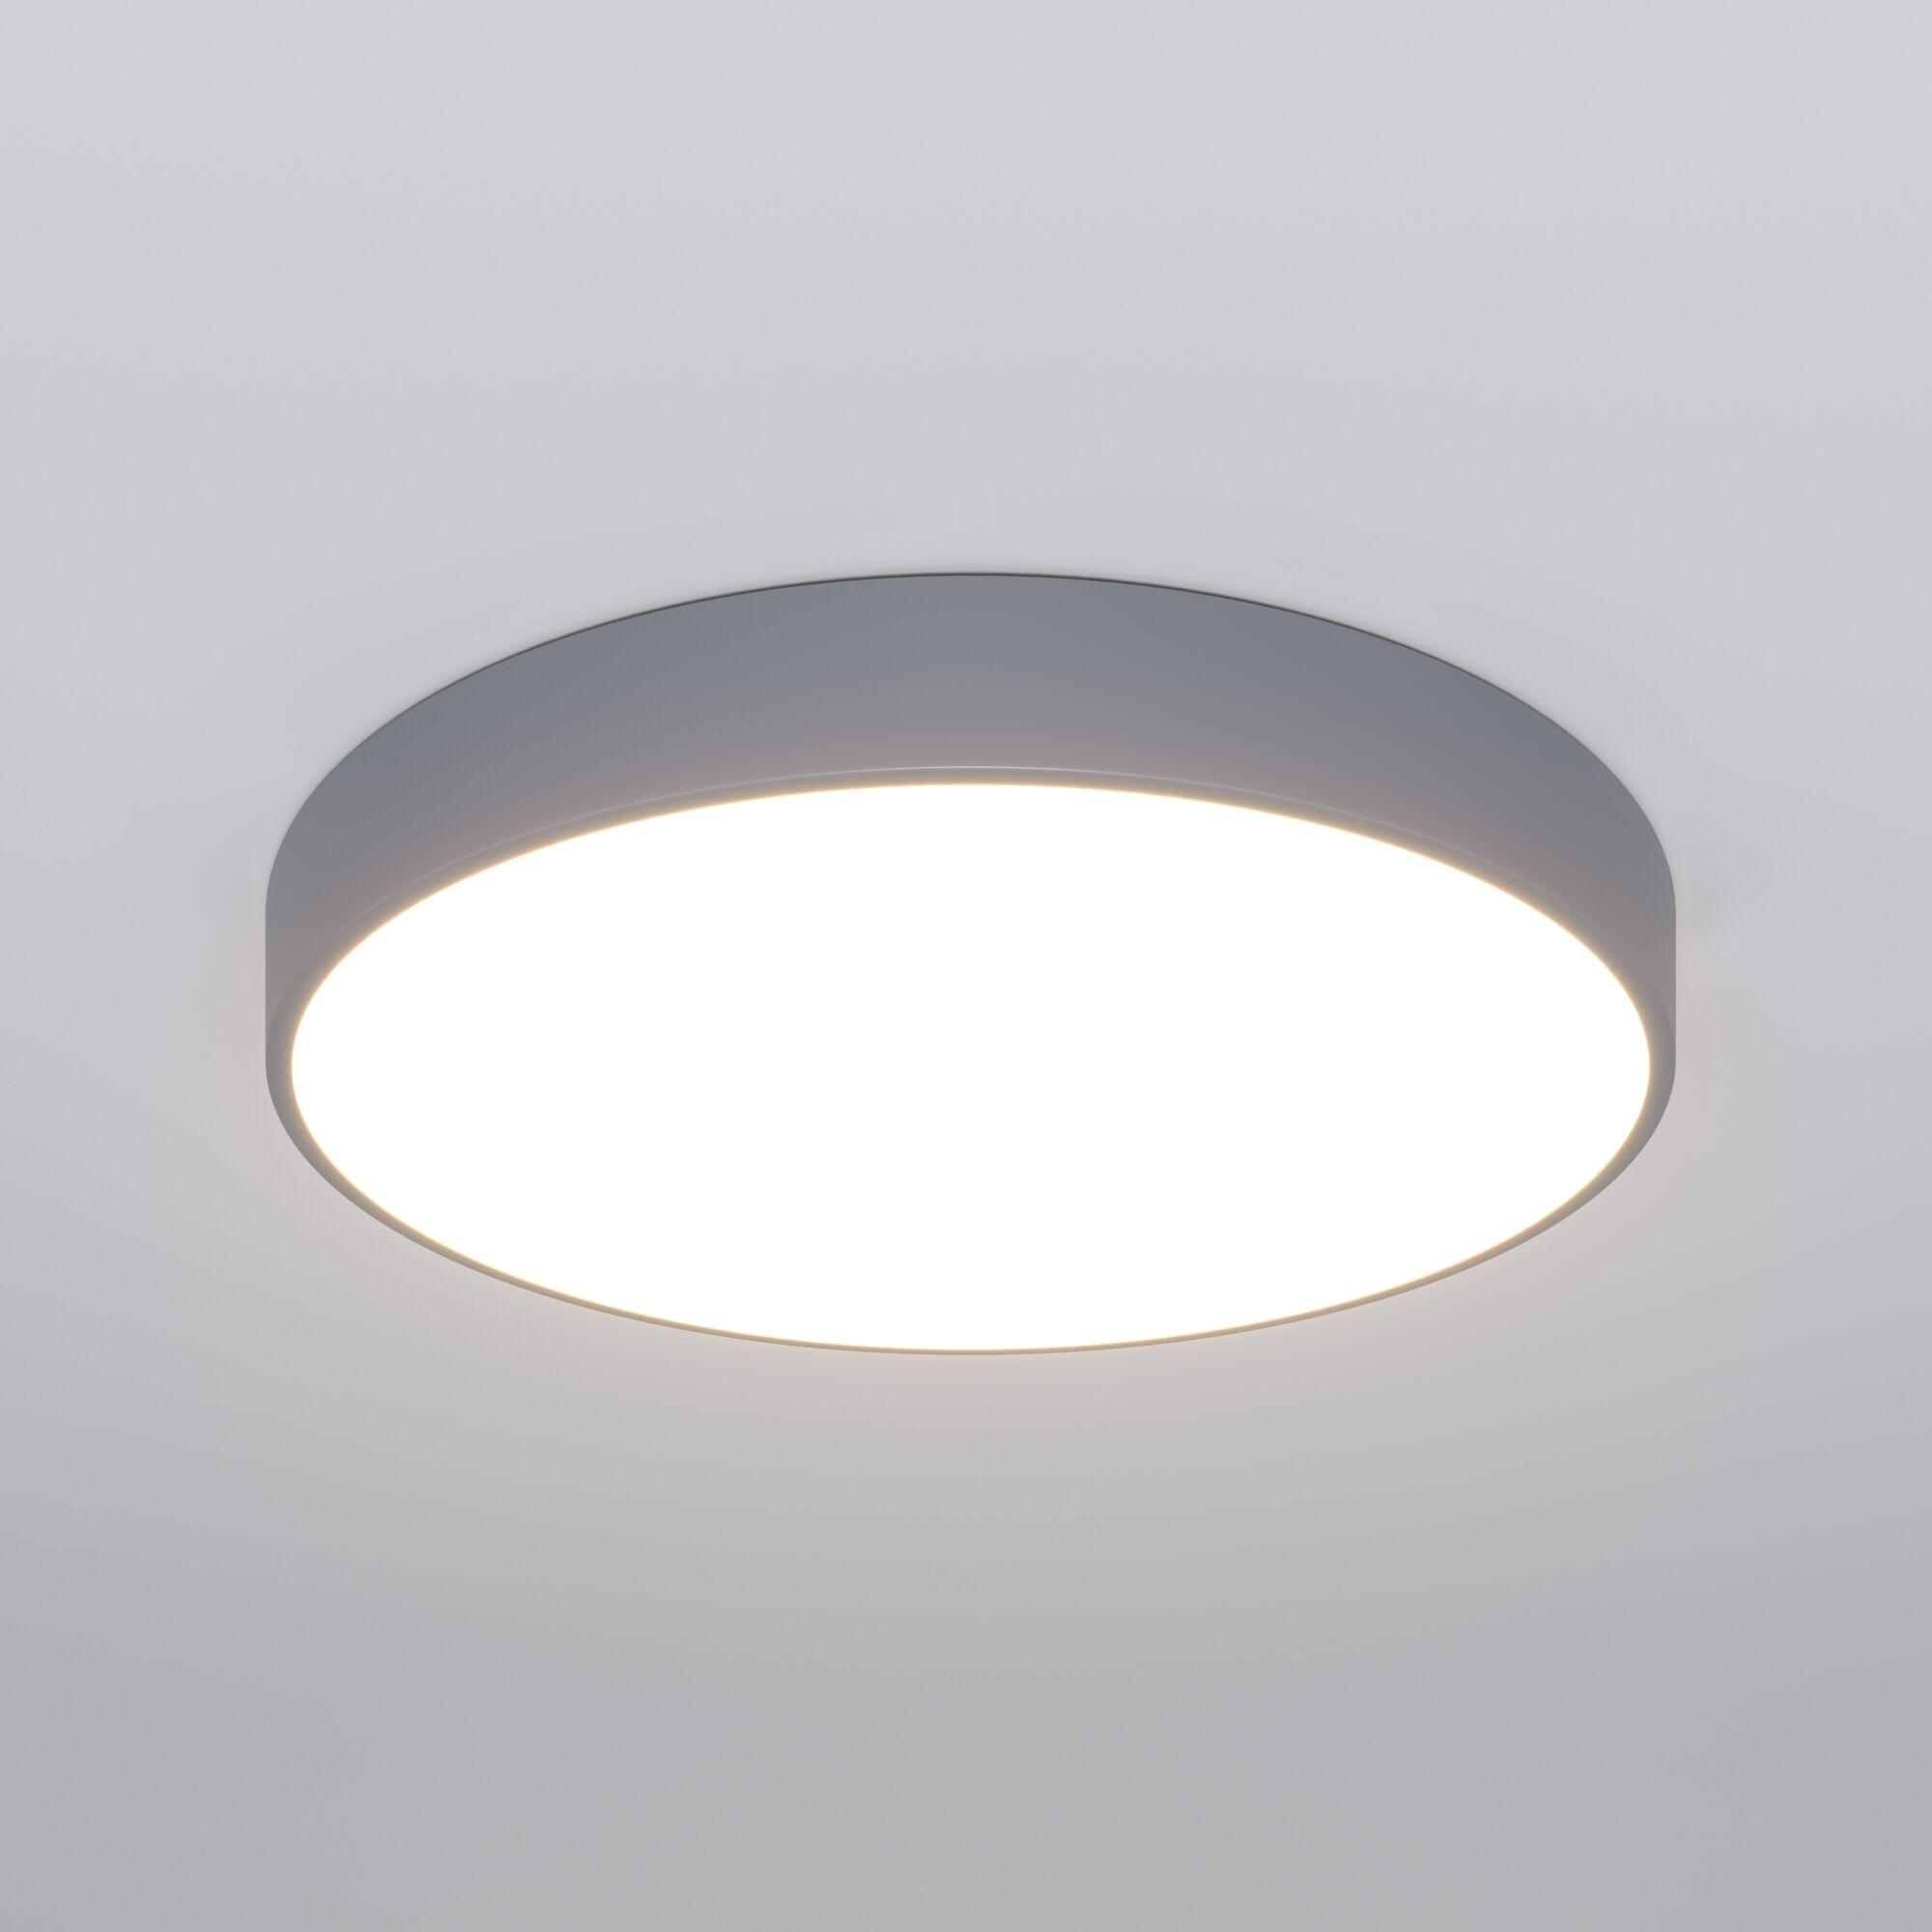 Потолочный светодиодный светильник с регулировкой яркости и цветовой температуры Eurosvet Entire 90320/1 серый. Фото 2